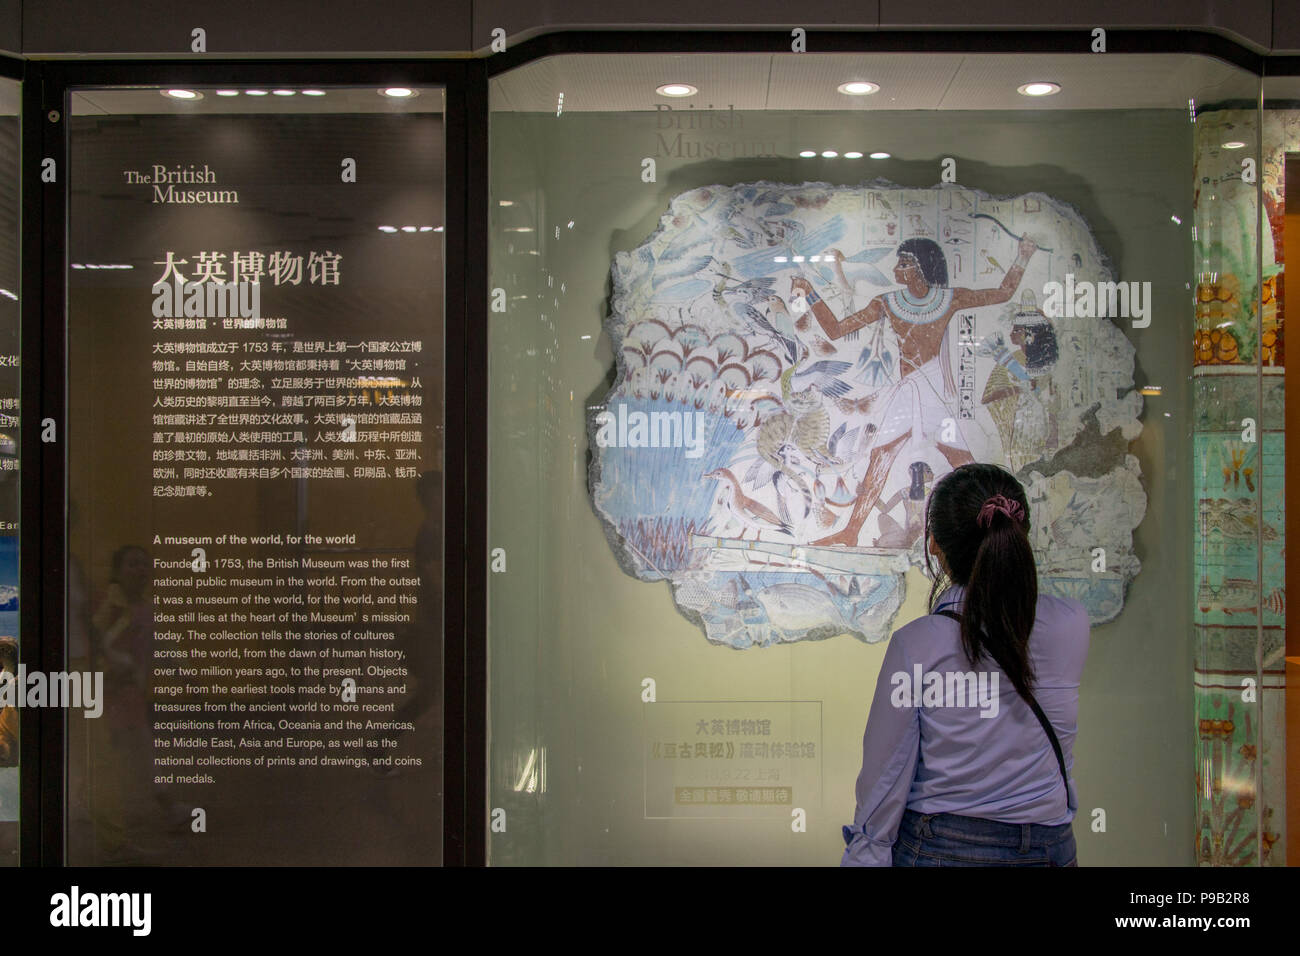 Shanghai, Shanghai, Chine. 17 juillet, 2018. Shanghai, Chine-dérivée d'expositions Musée Britannique peut être vu sur l'affichage à la station de métro de Shanghai à Shanghai, Chine. Crédit : SIPA Asie/ZUMA/Alamy Fil Live News Banque D'Images